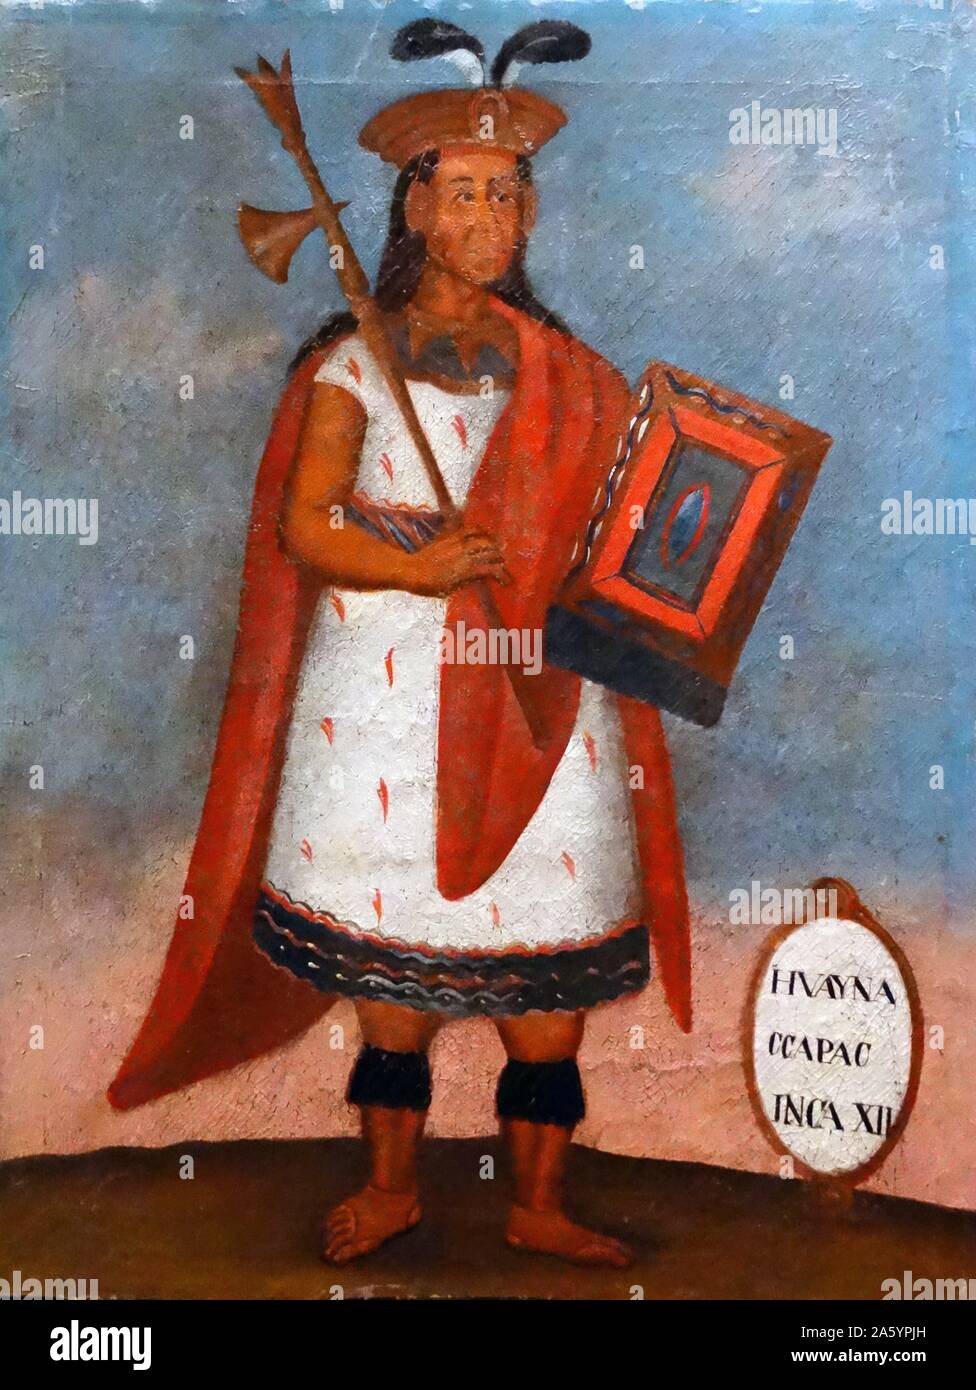 Portrait de l'époque coloniale espagnole Roi inca Huayna Capac, (1464/1468-1524) le 11e Sapa Inca de l'Empire Inca et sixième de la dynastie de Hanan. Banque D'Images